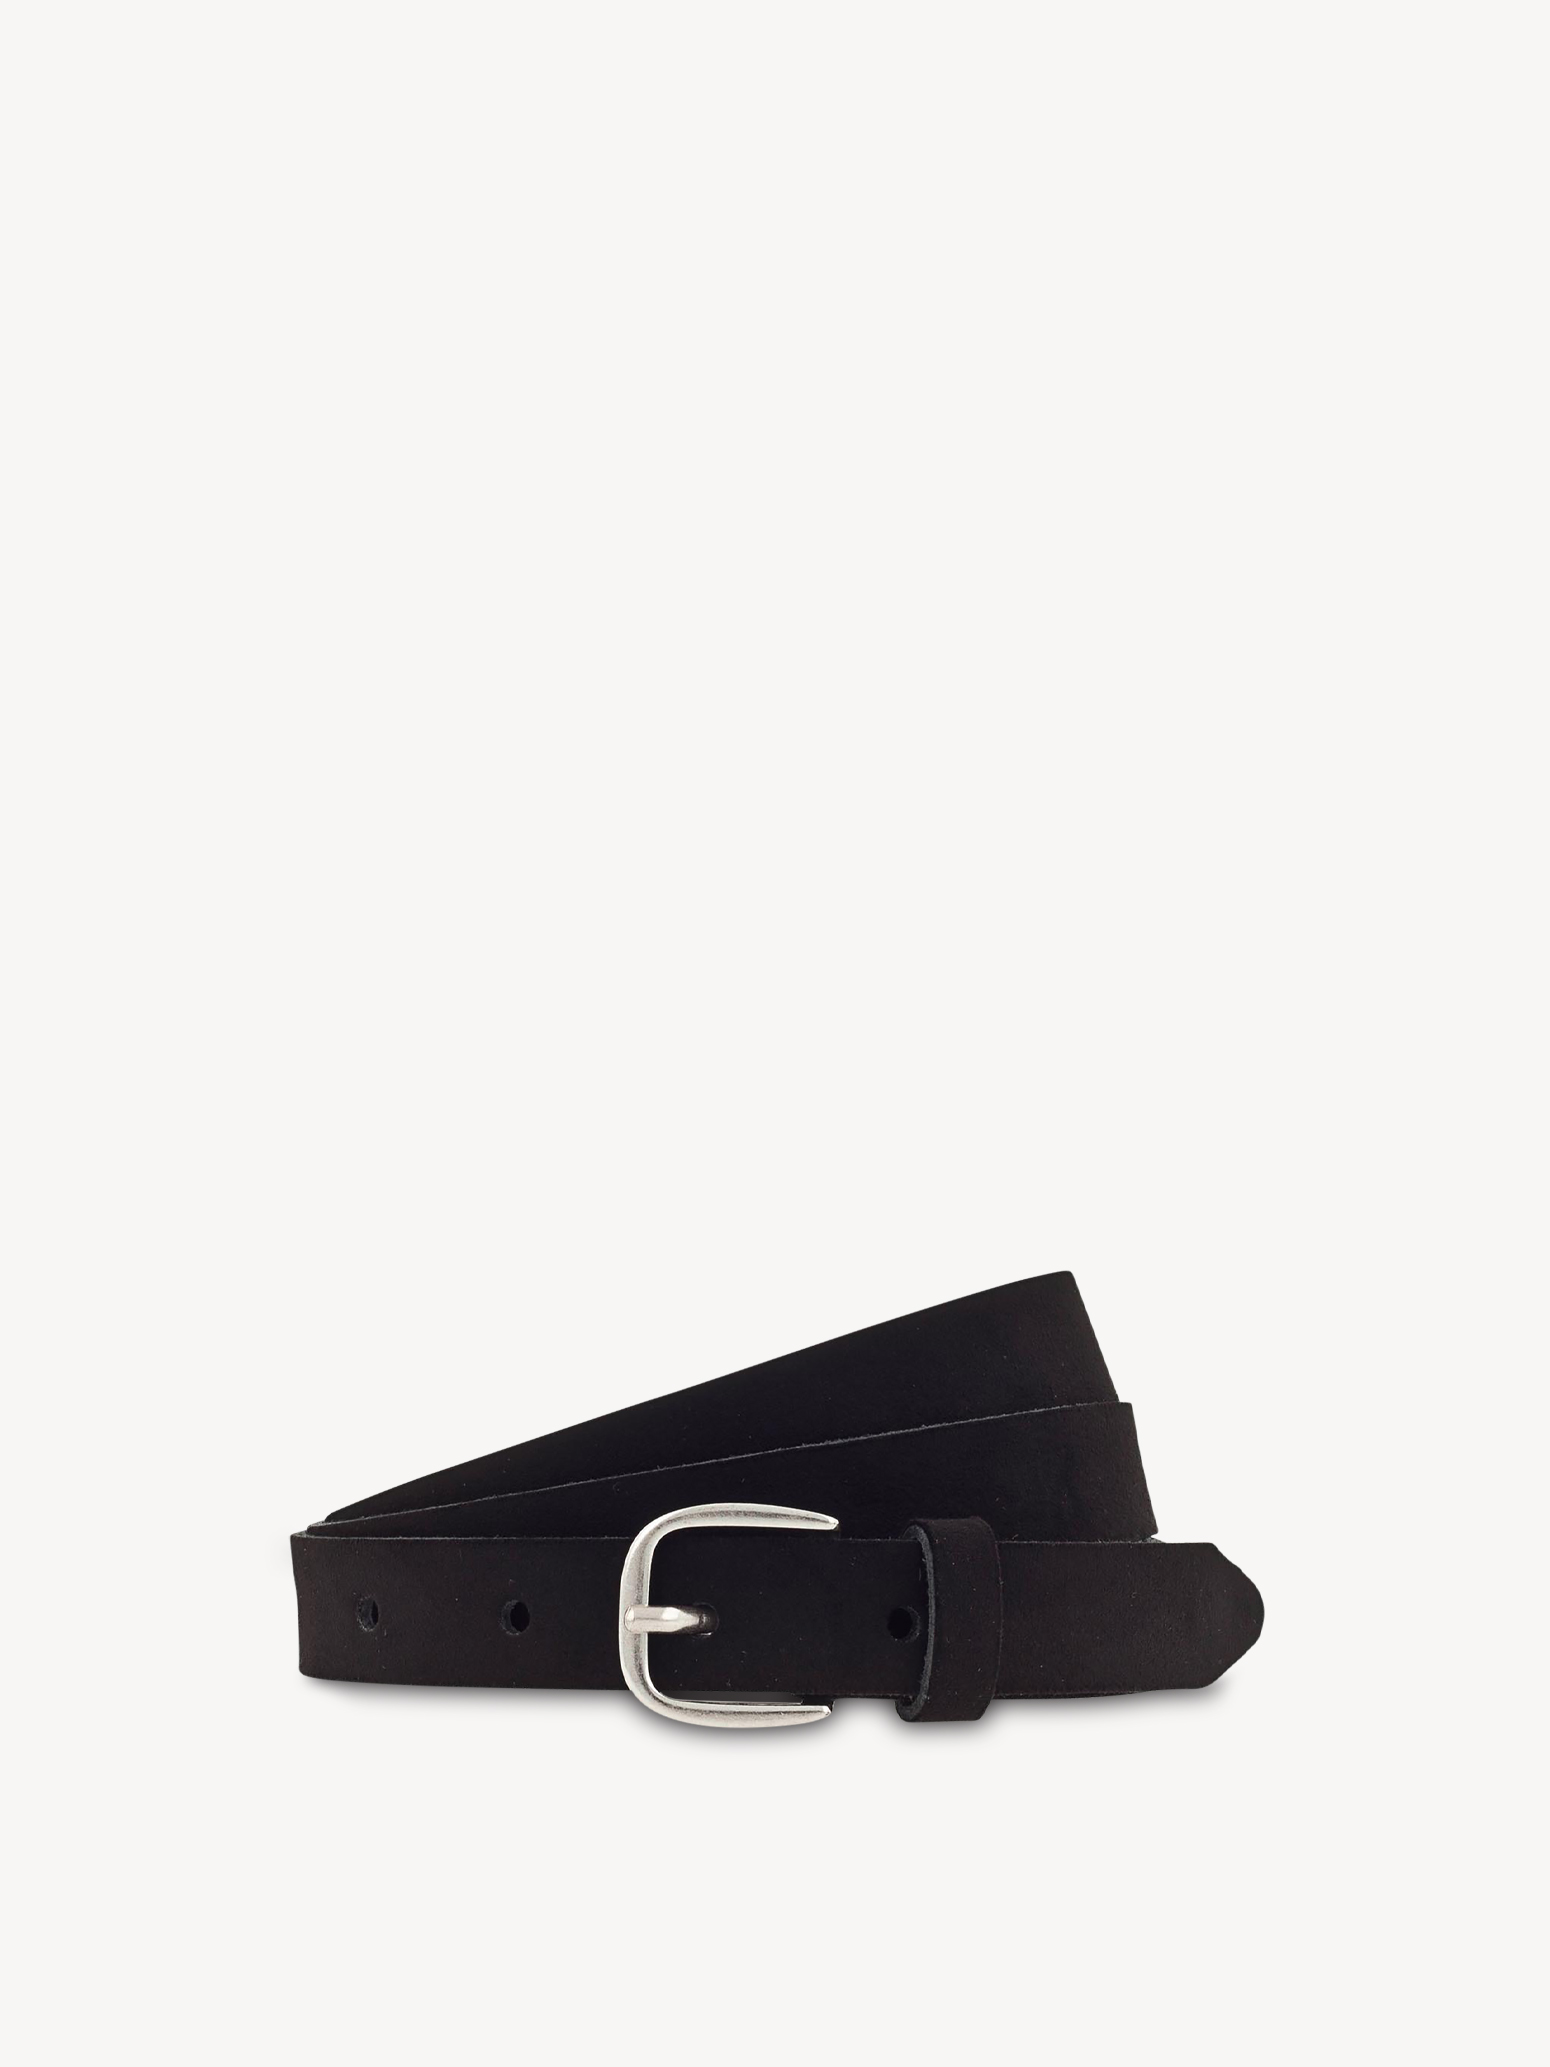 Leather Belt - black, schwarz, hi-res